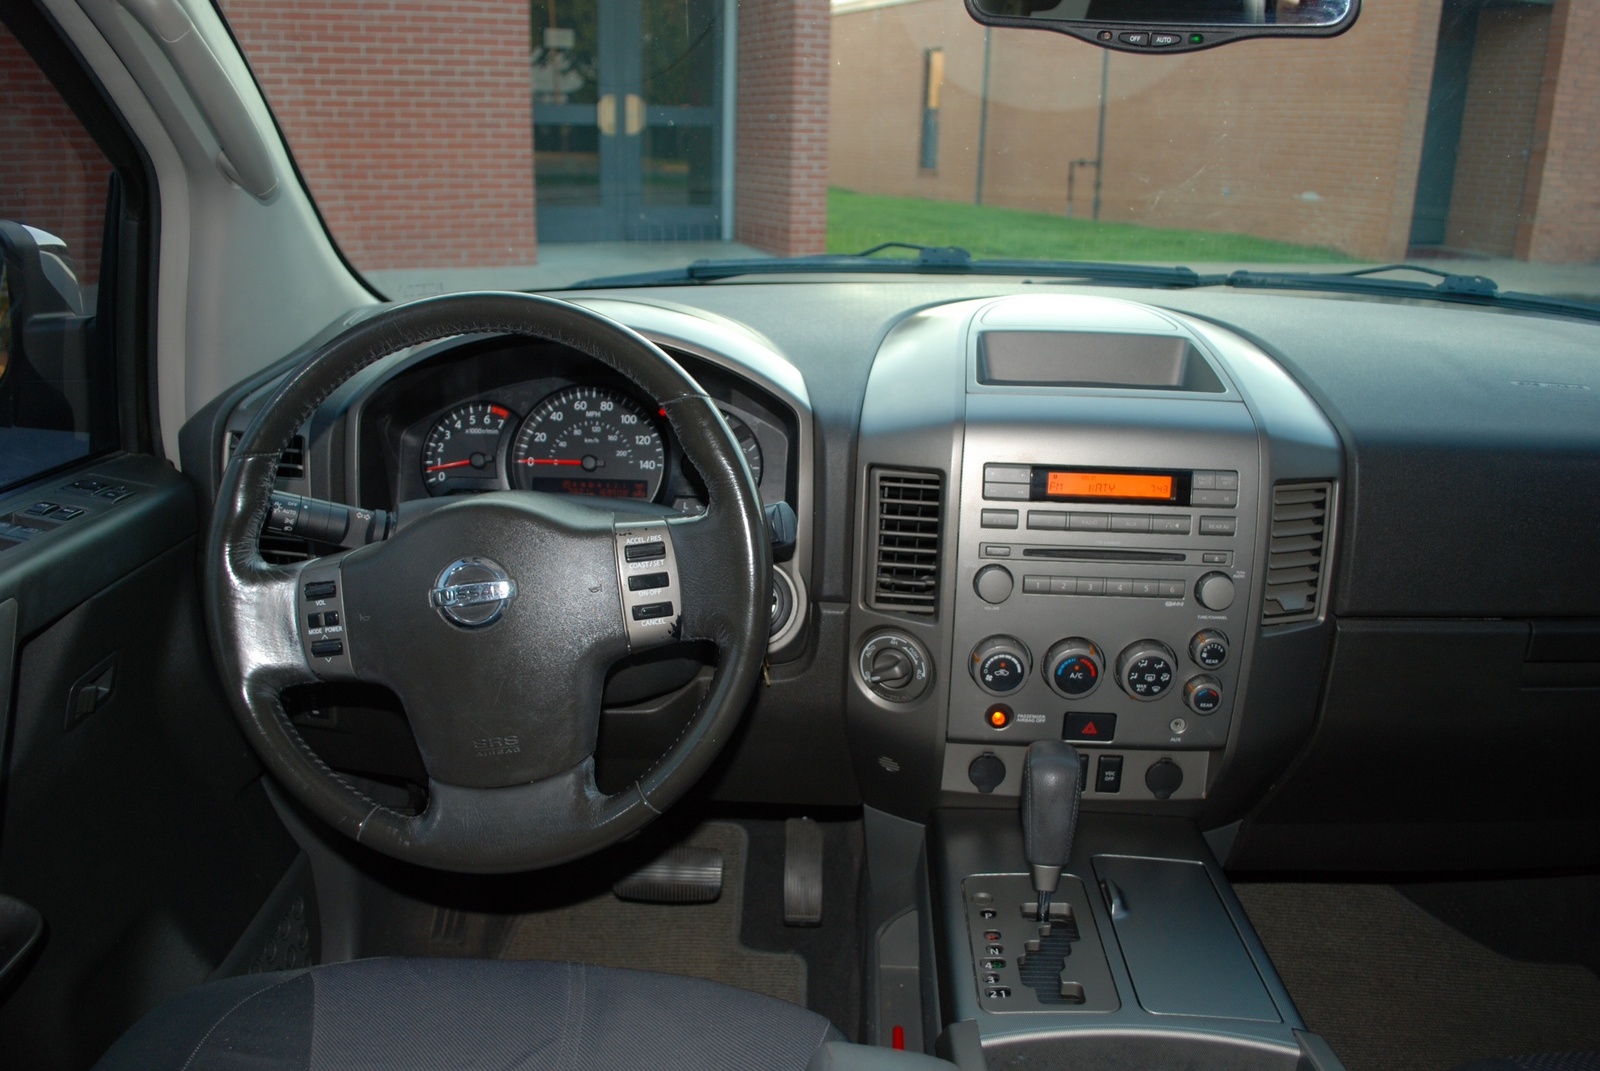 2005 Nissan armada interior pics